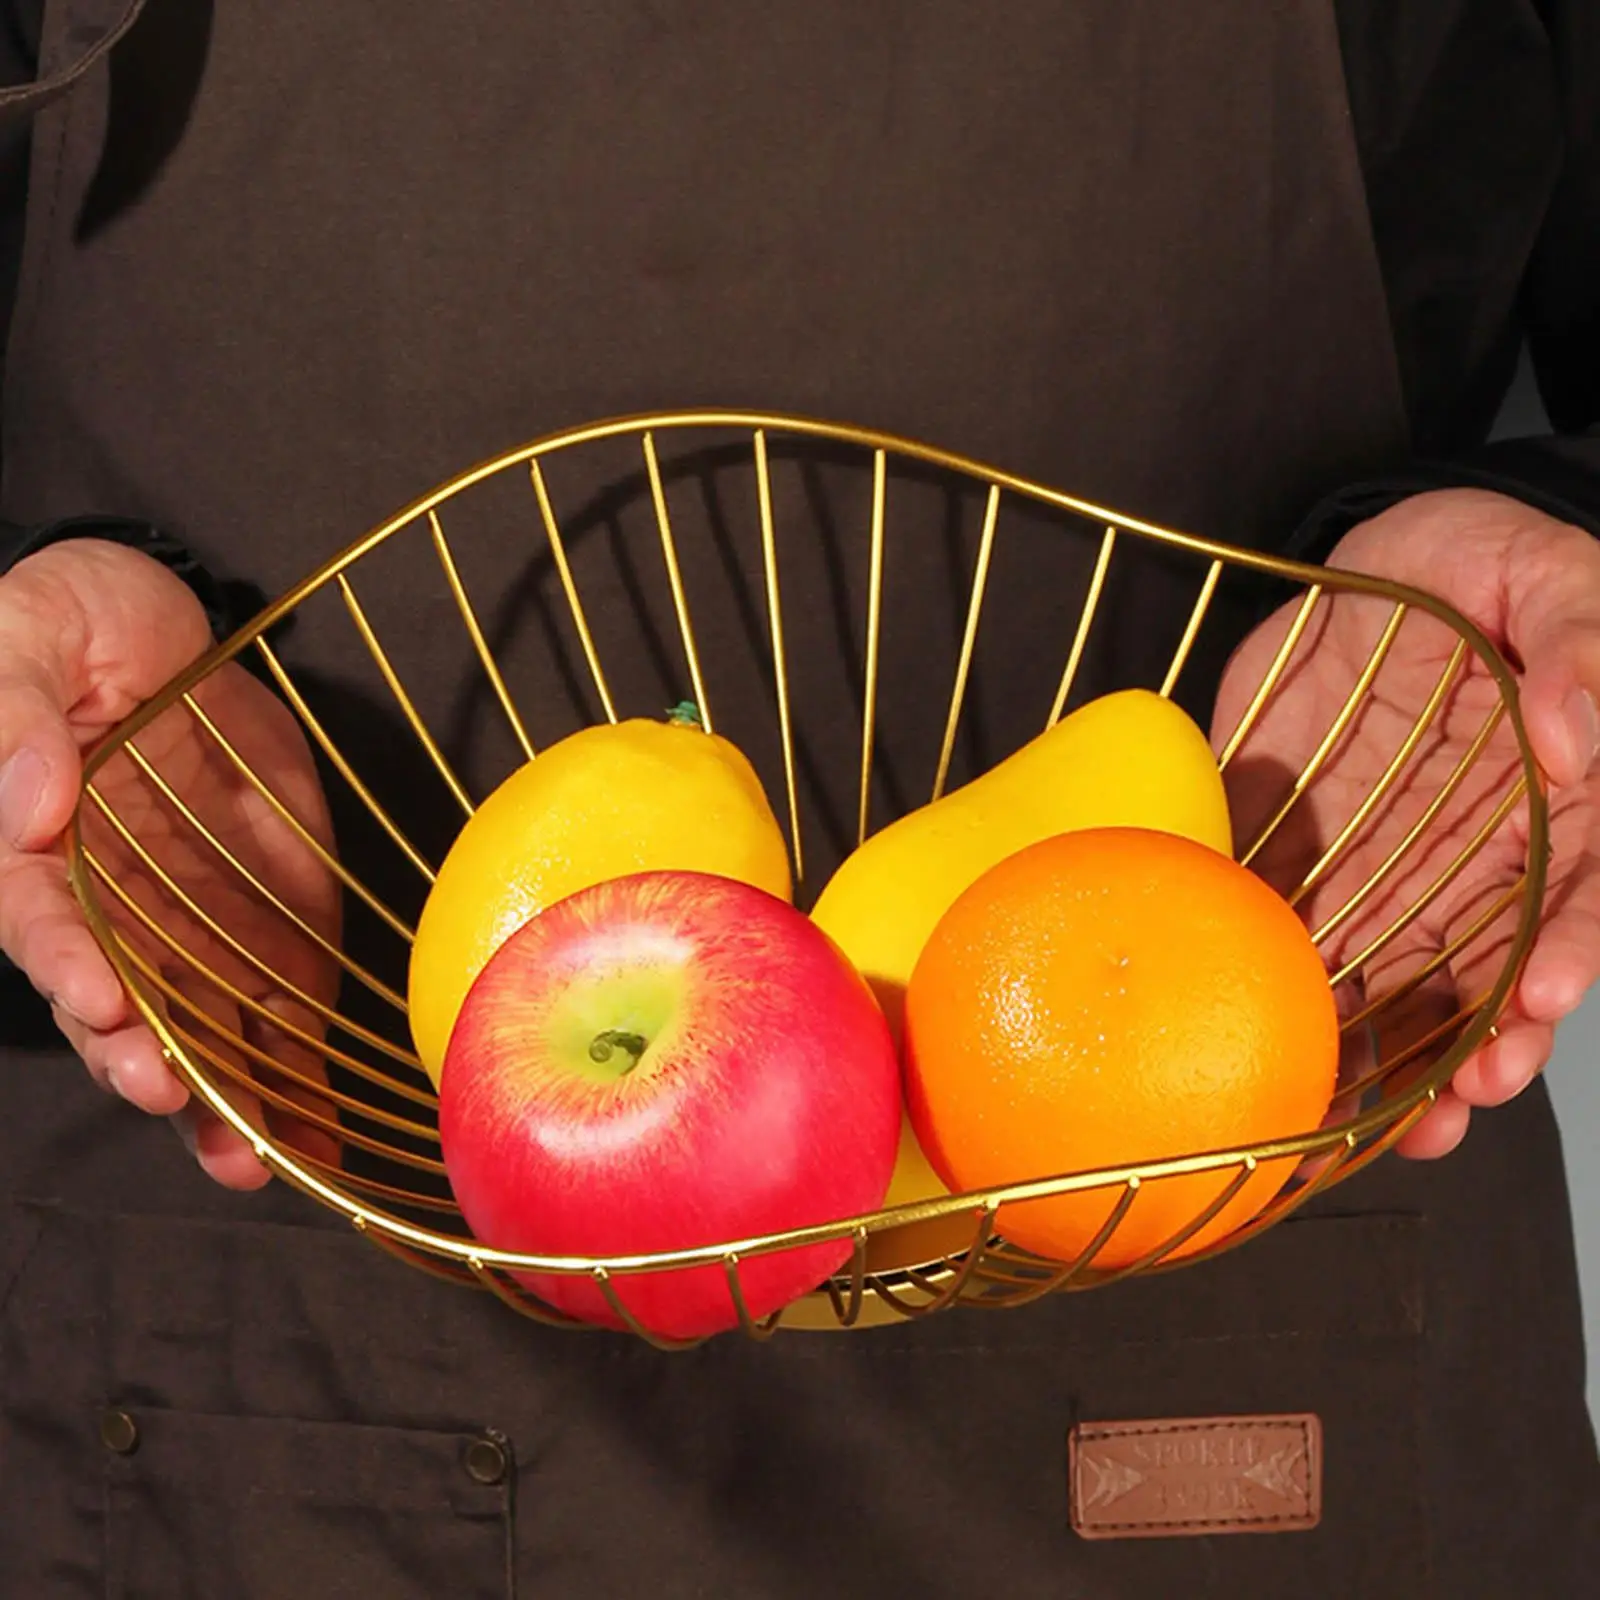 Multipurpose Metal Wire Fruit Basket Candy Storage Dessert Rack Modern Vegetable Holder for Kitchen Wedding Livingroom Decor